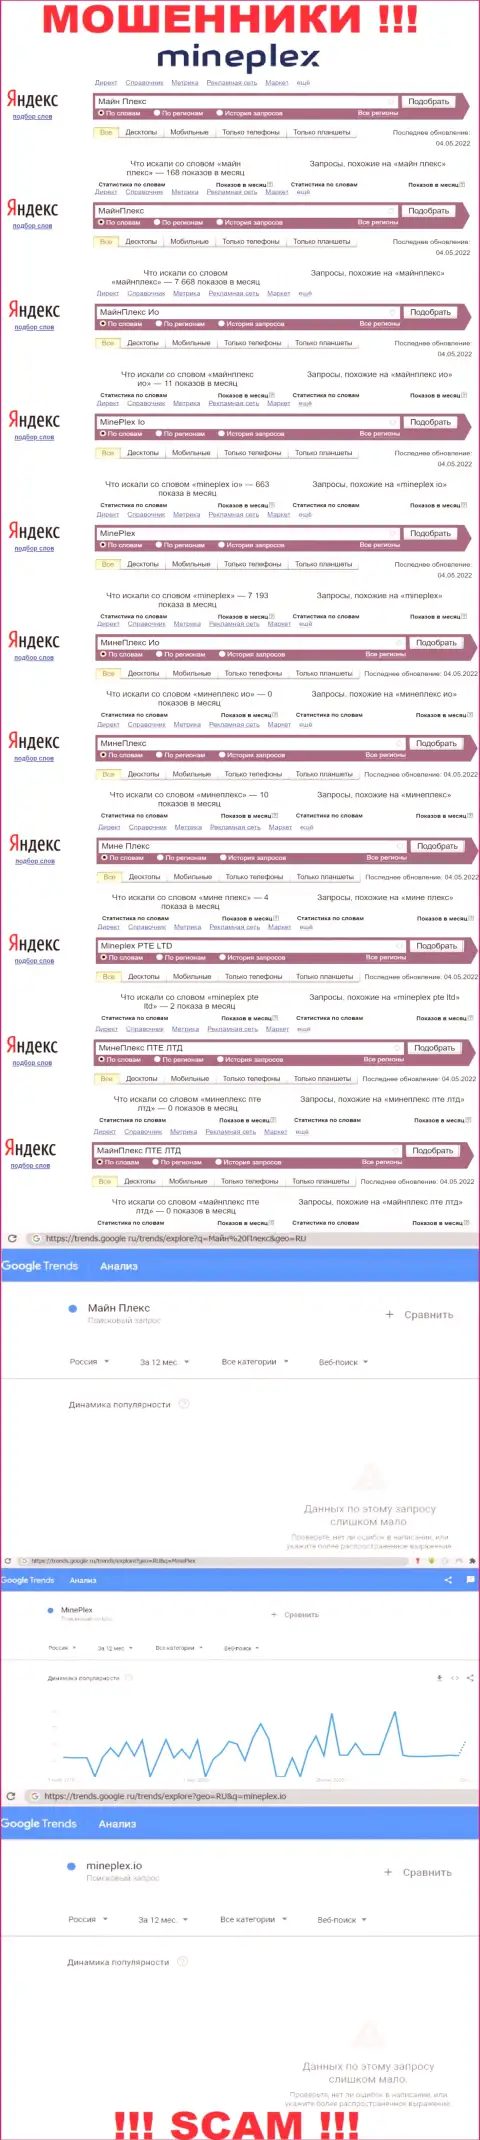 Количество поисковых запросов посетителями глобальной сети сведений о ворах MinePlex